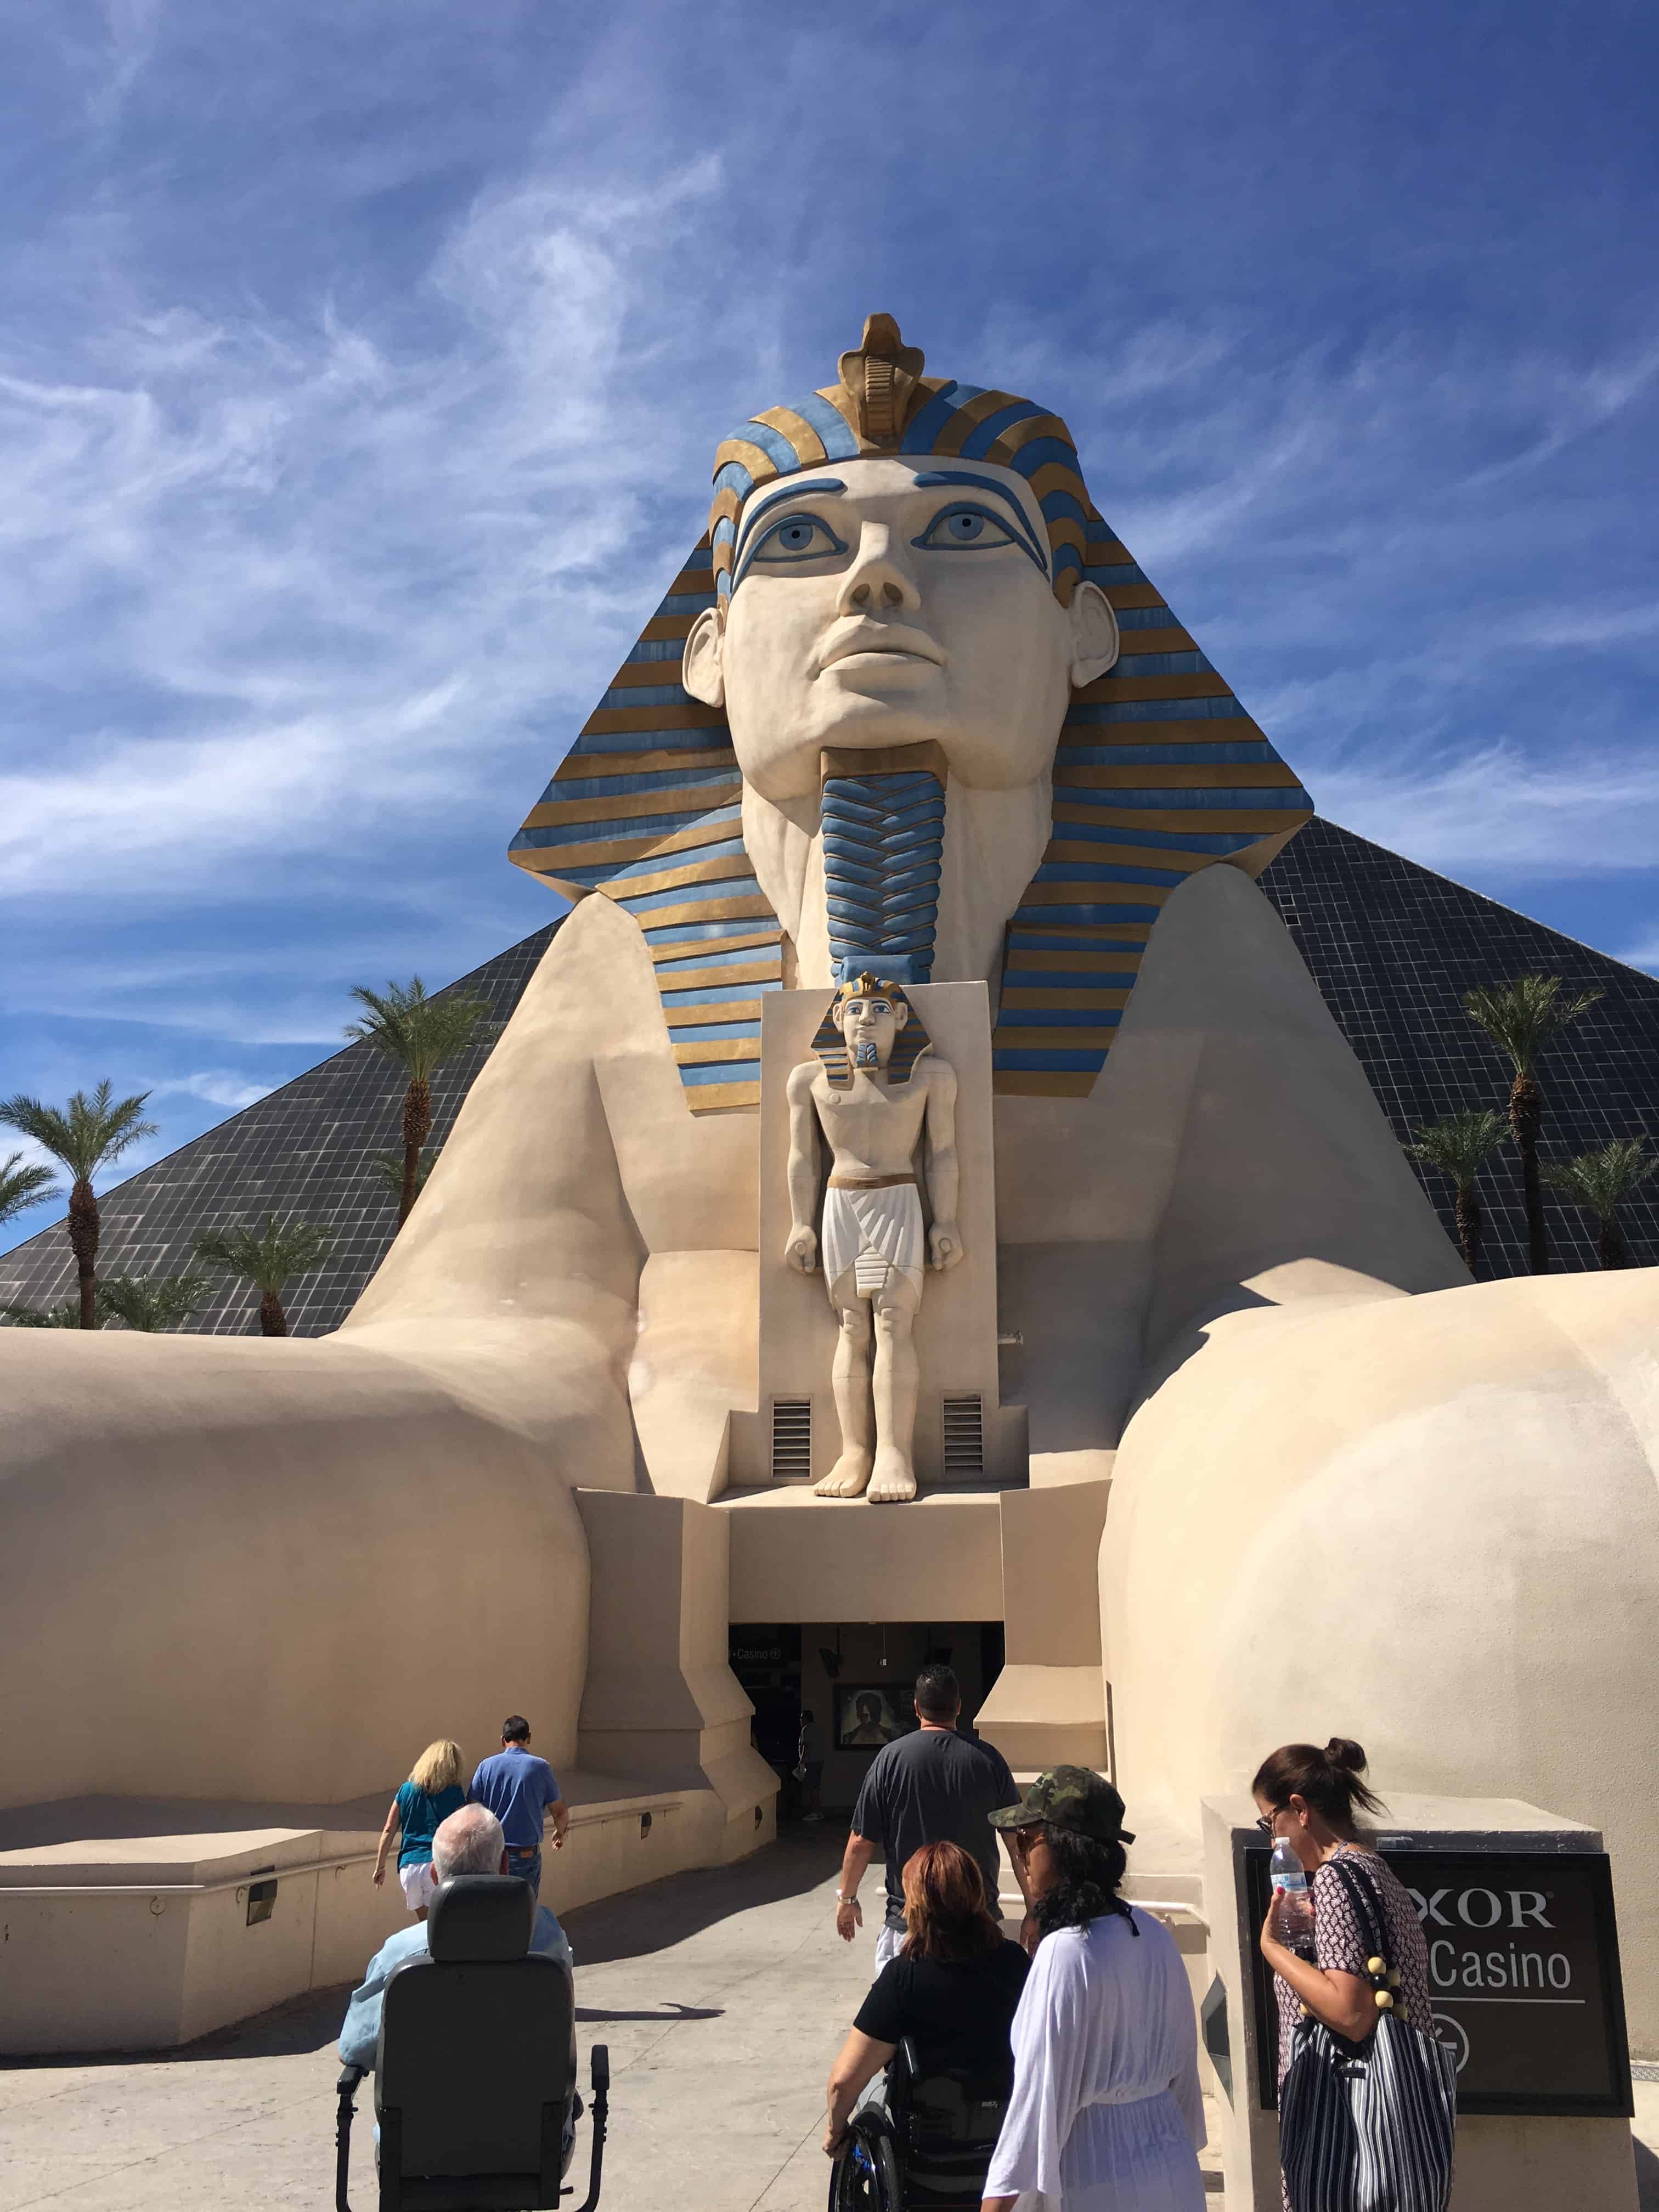 Sphinx at Luxor in Las Vegas, Nevada